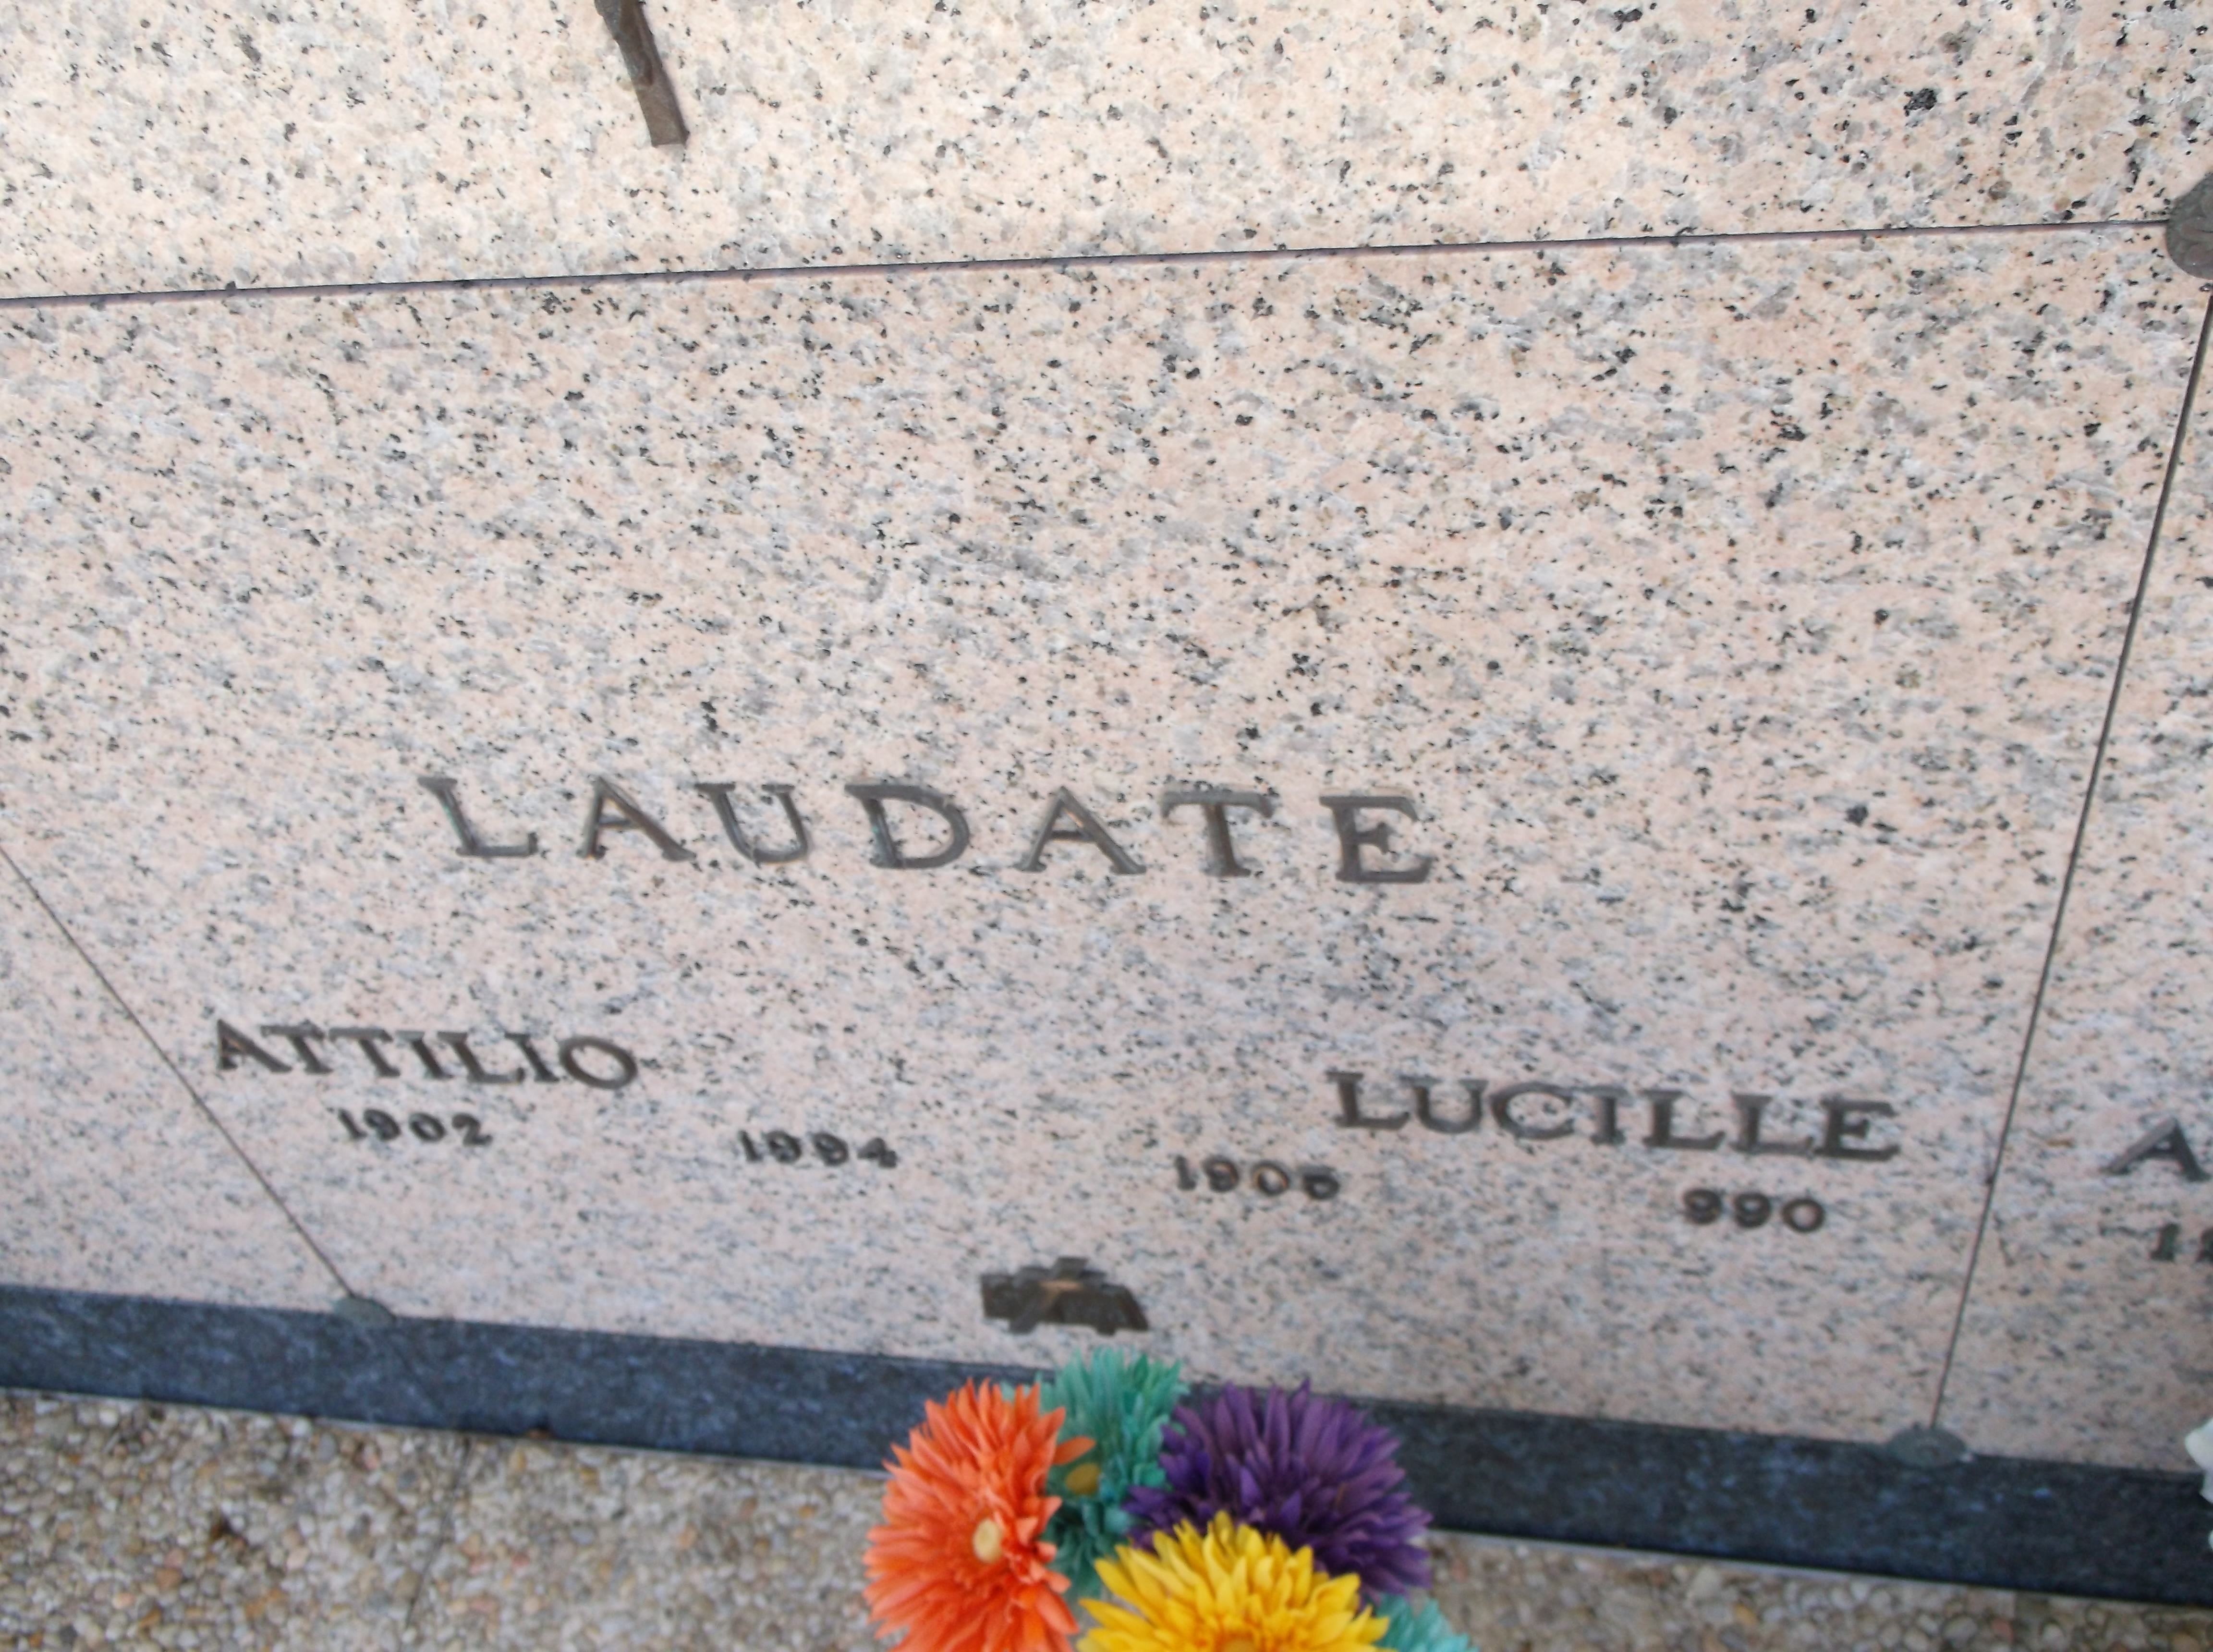 Lucille Laudate